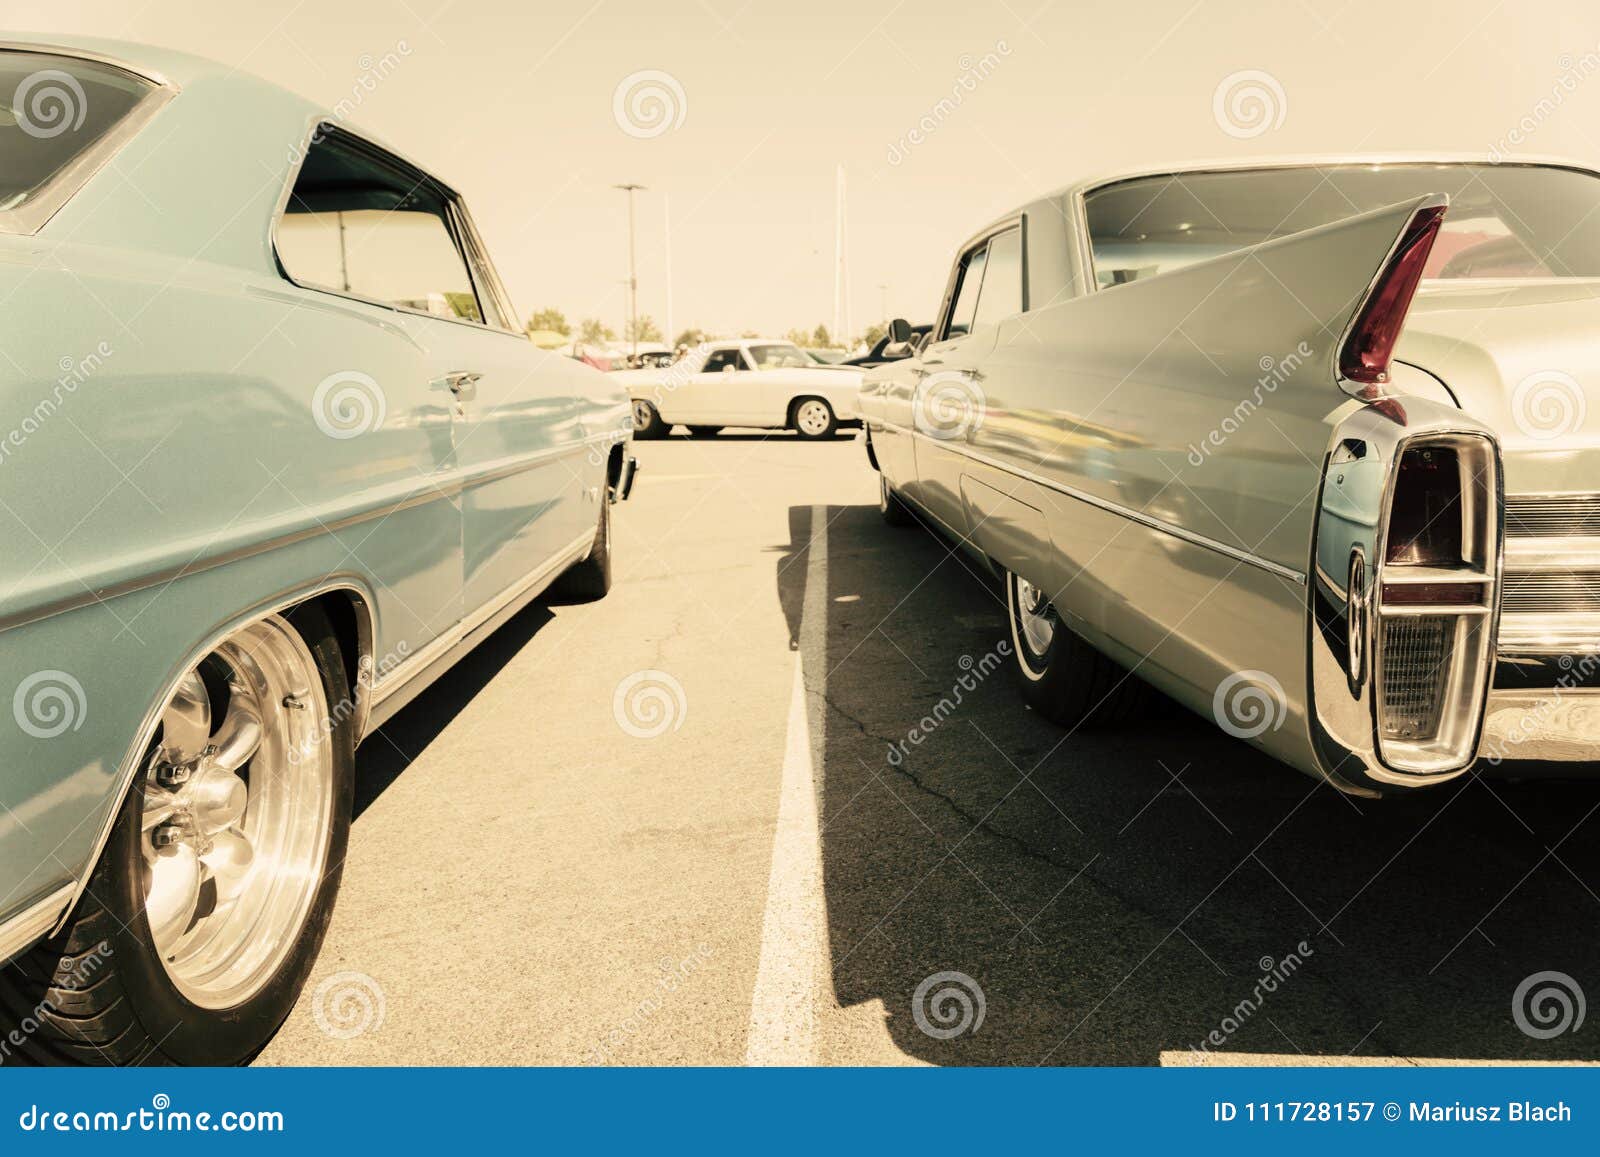 140 4K Vintage Car Wallpapers  Background Images